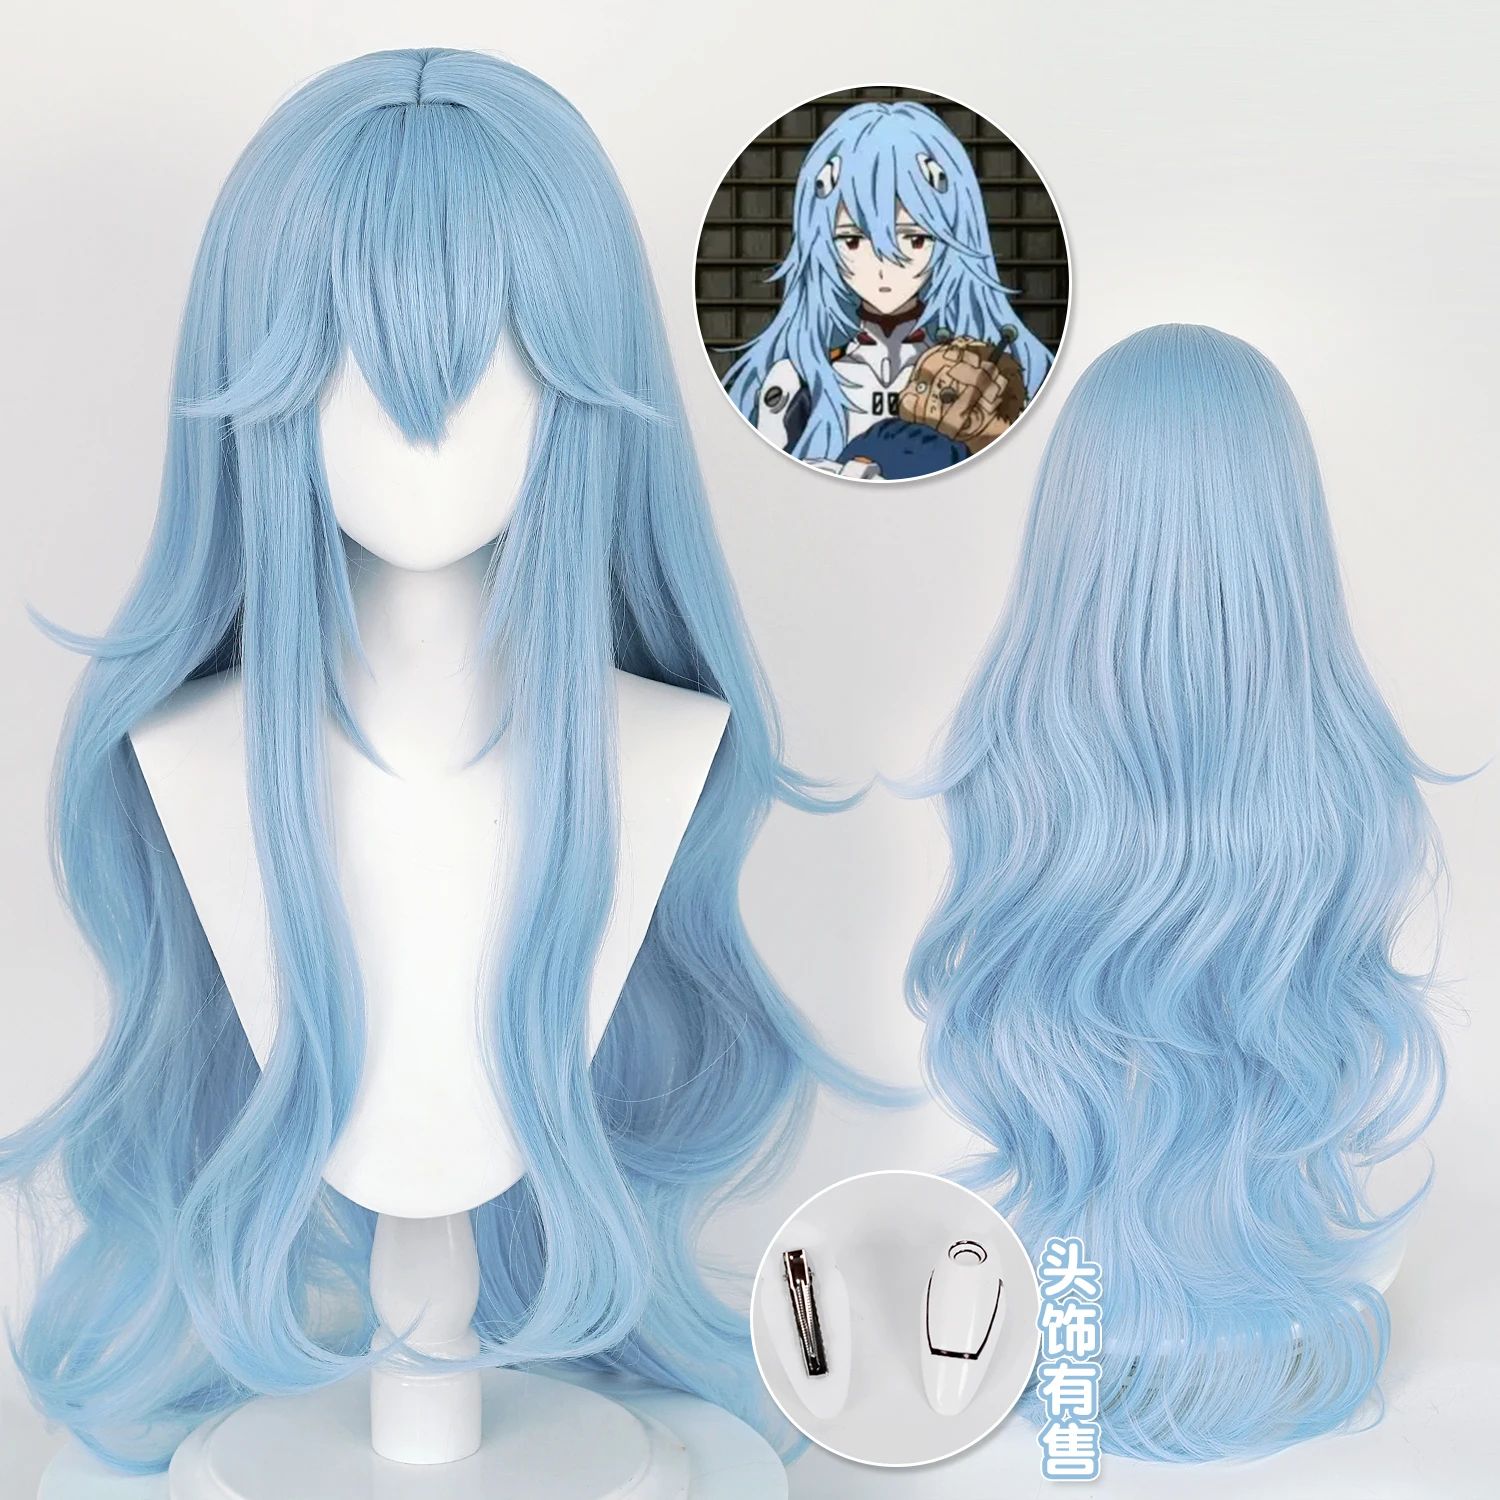 

Парик для косплея аниме Ayanami Рэй, длиной 100 см, из ЭВА, голубые волнистые термостойкие синтетические волосы, парик, шапочка, шпилька